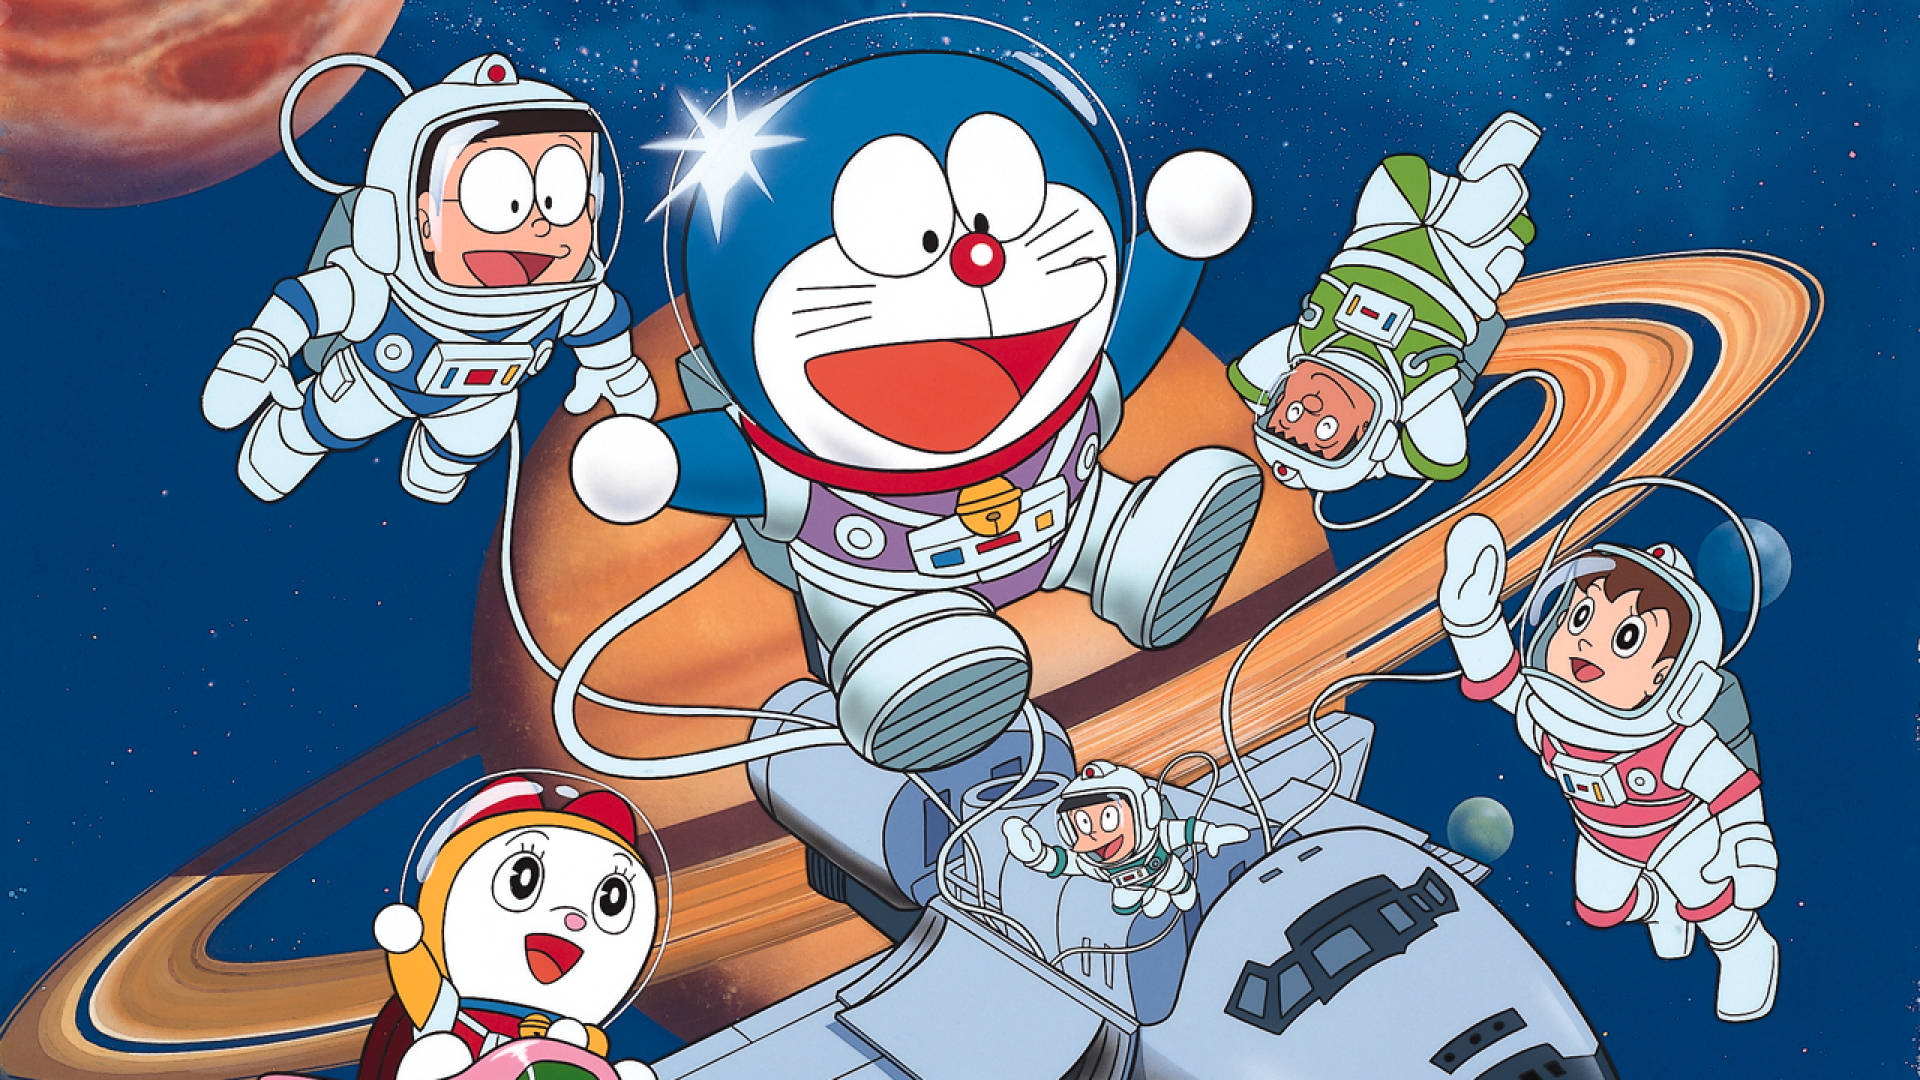 Free Doraemon Wallpaper Downloads, [300+] Doraemon Wallpapers for FREE |  